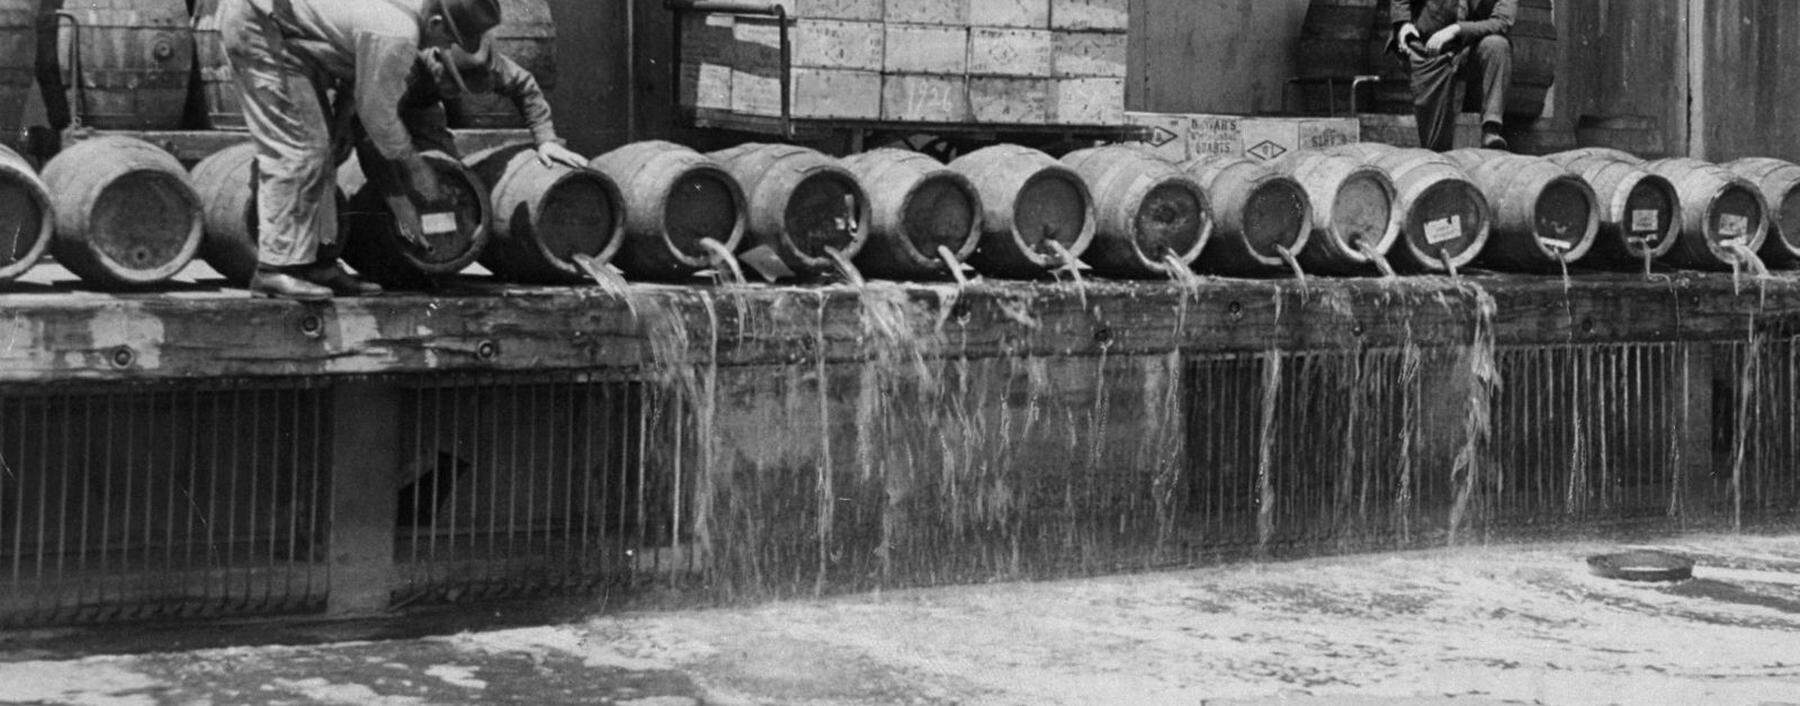 Weg mit dem Teufelszeug! Der Inhalt von Tausenden Bierfässern landete während der Prohibition im Hafenbecken von New York.